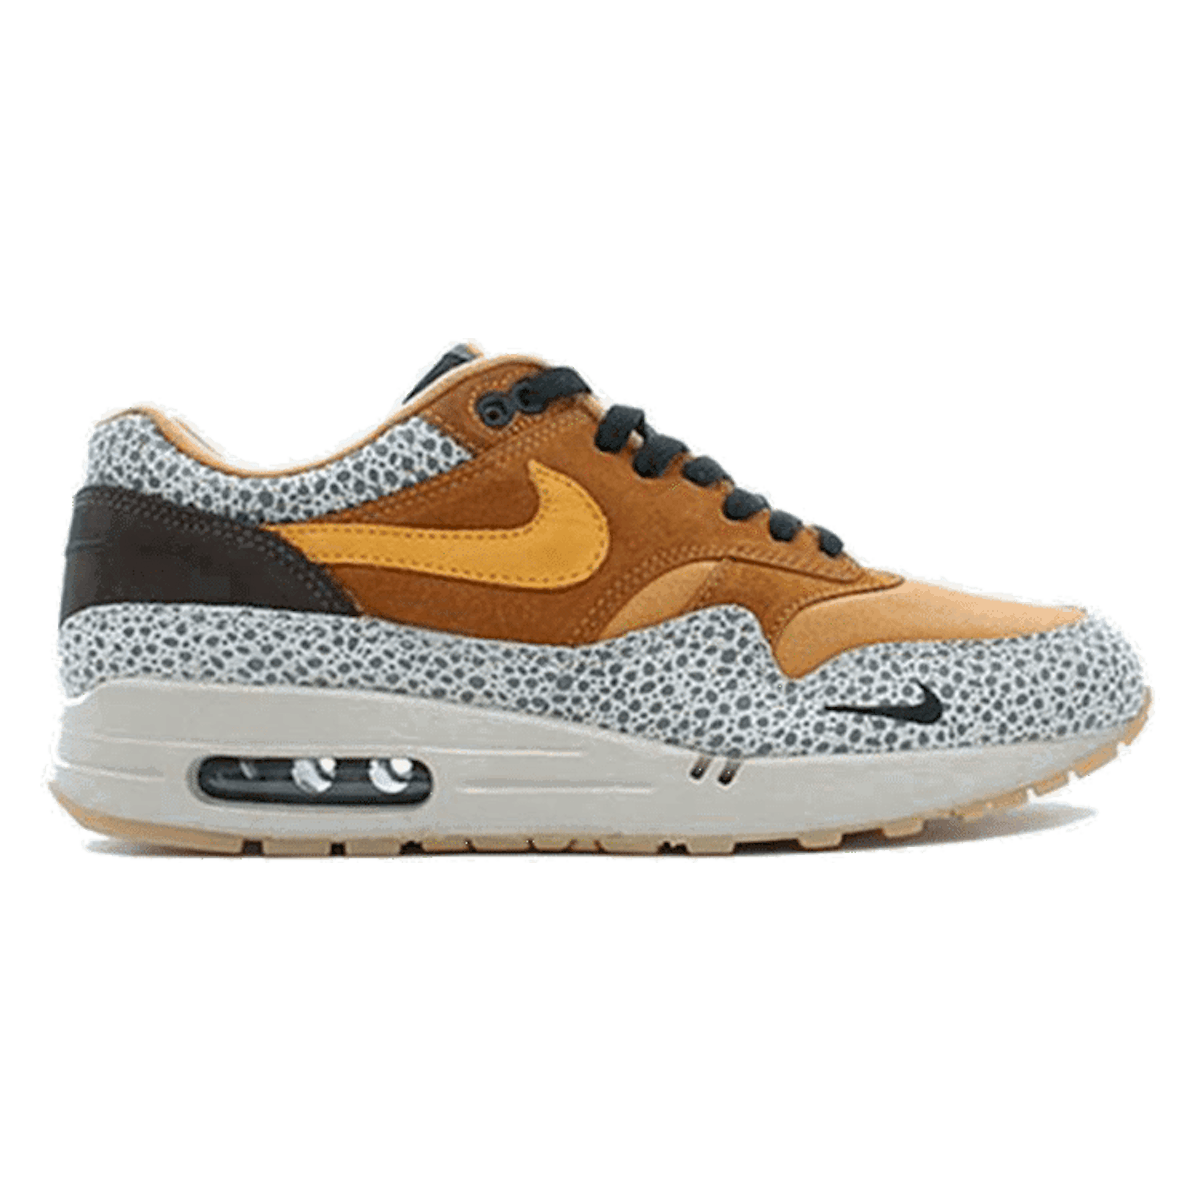 atmos x Nike Air Max 1 "Safari"